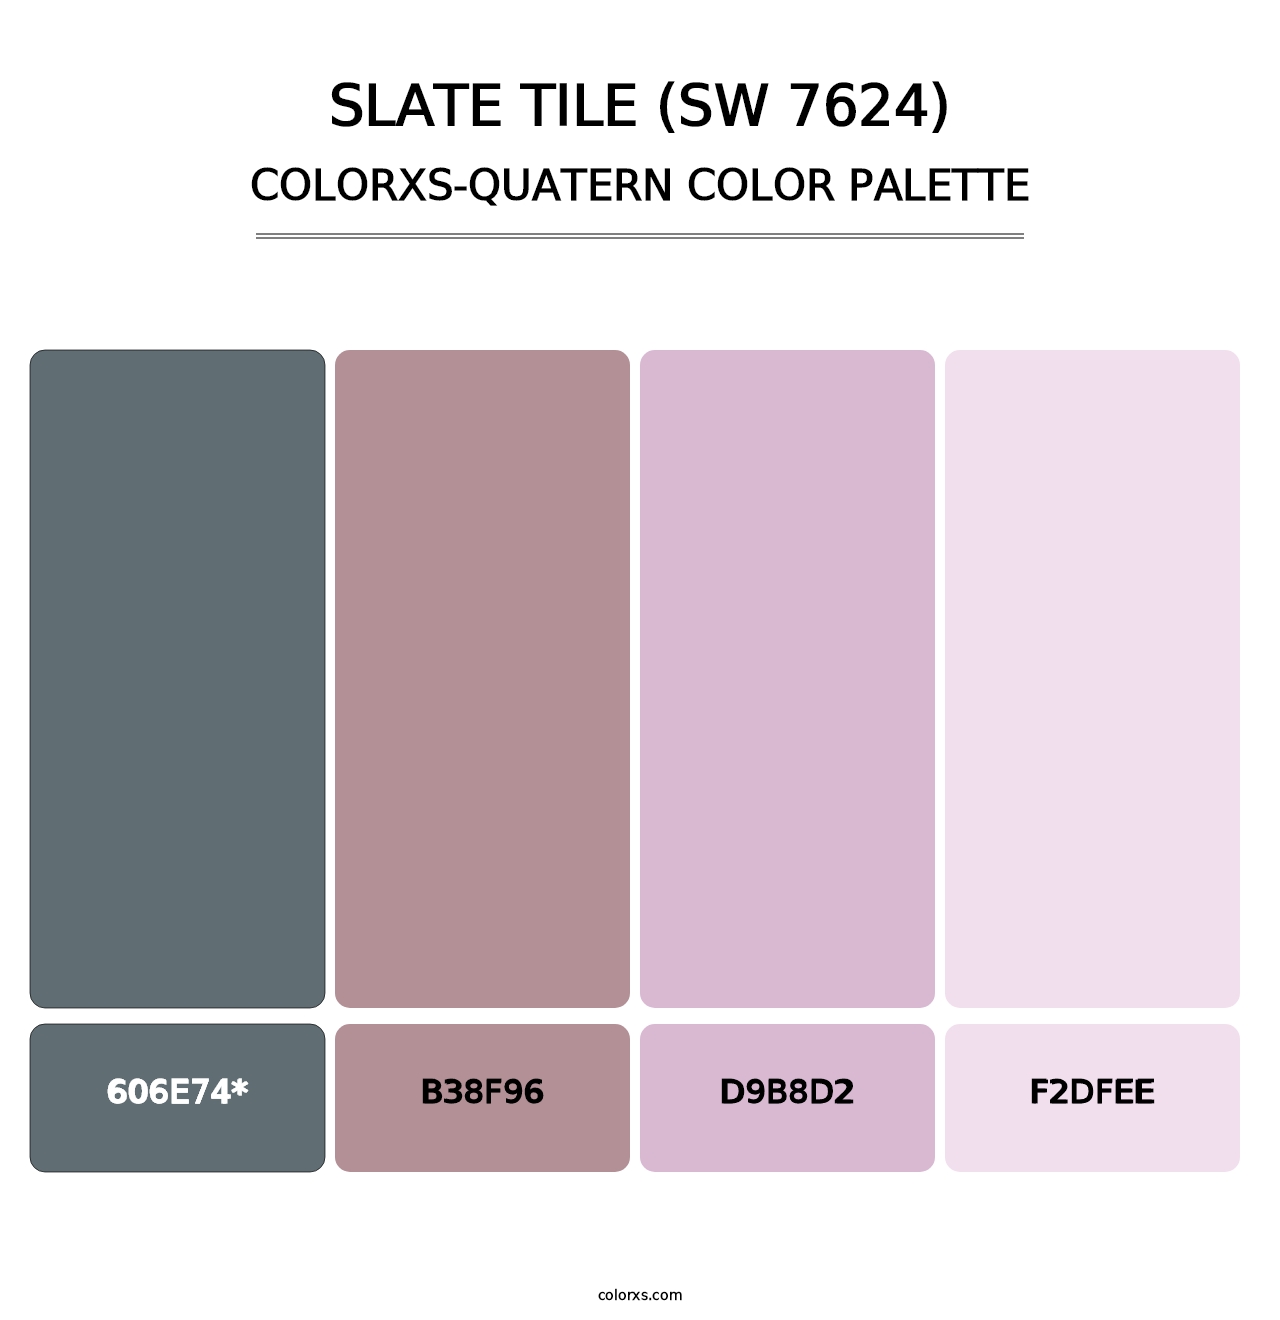 Slate Tile (SW 7624) - Colorxs Quad Palette